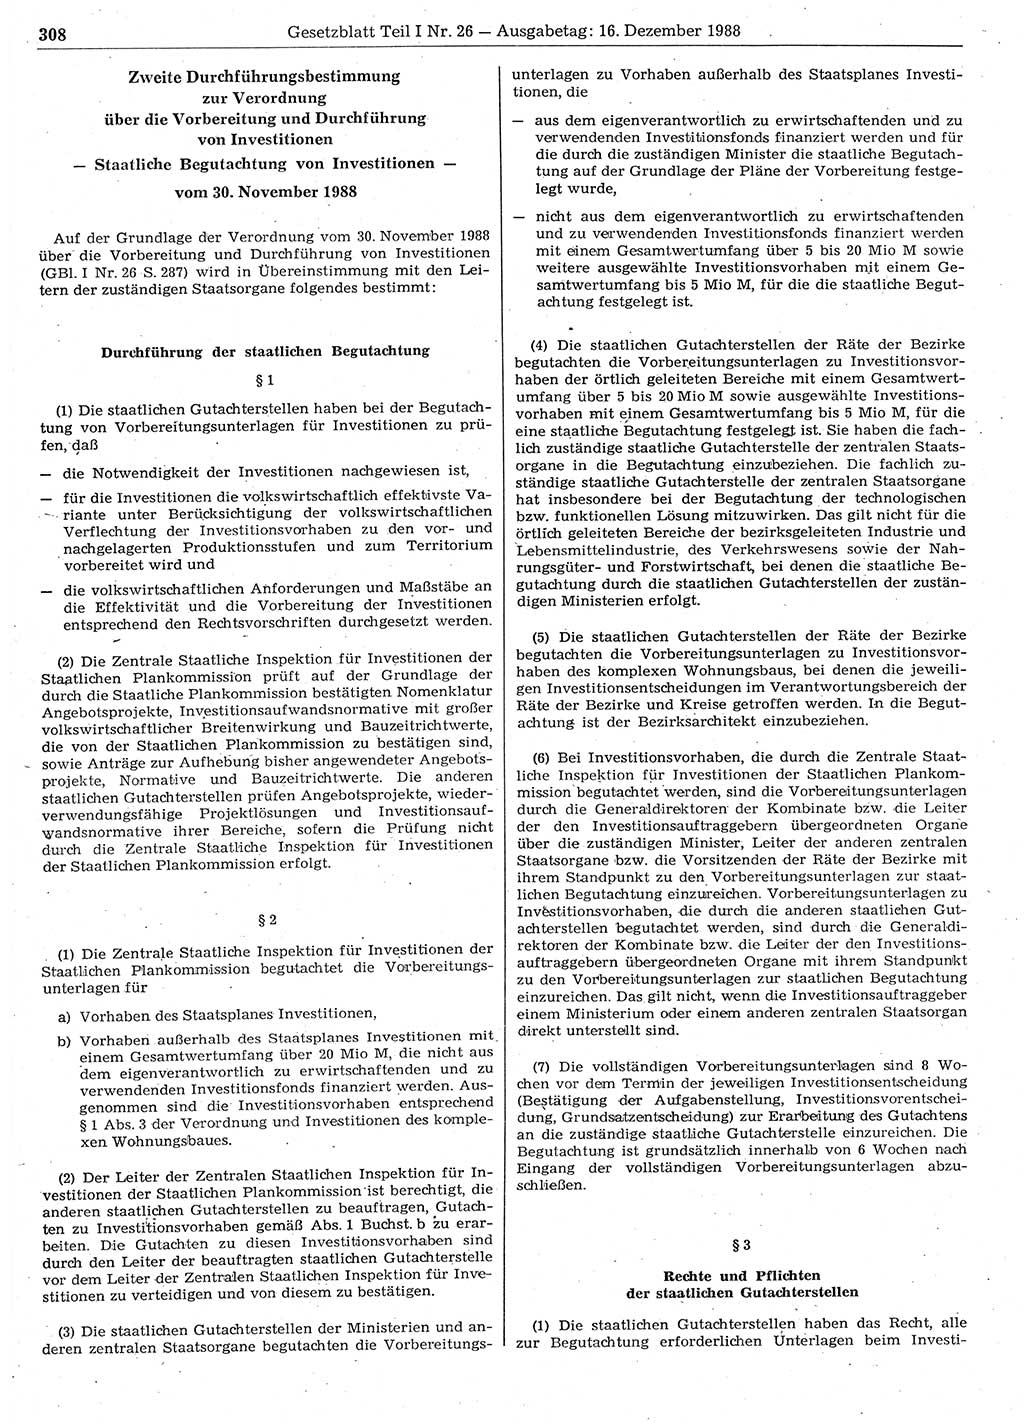 Gesetzblatt (GBl.) der Deutschen Demokratischen Republik (DDR) Teil Ⅰ 1988, Seite 308 (GBl. DDR Ⅰ 1988, S. 308)